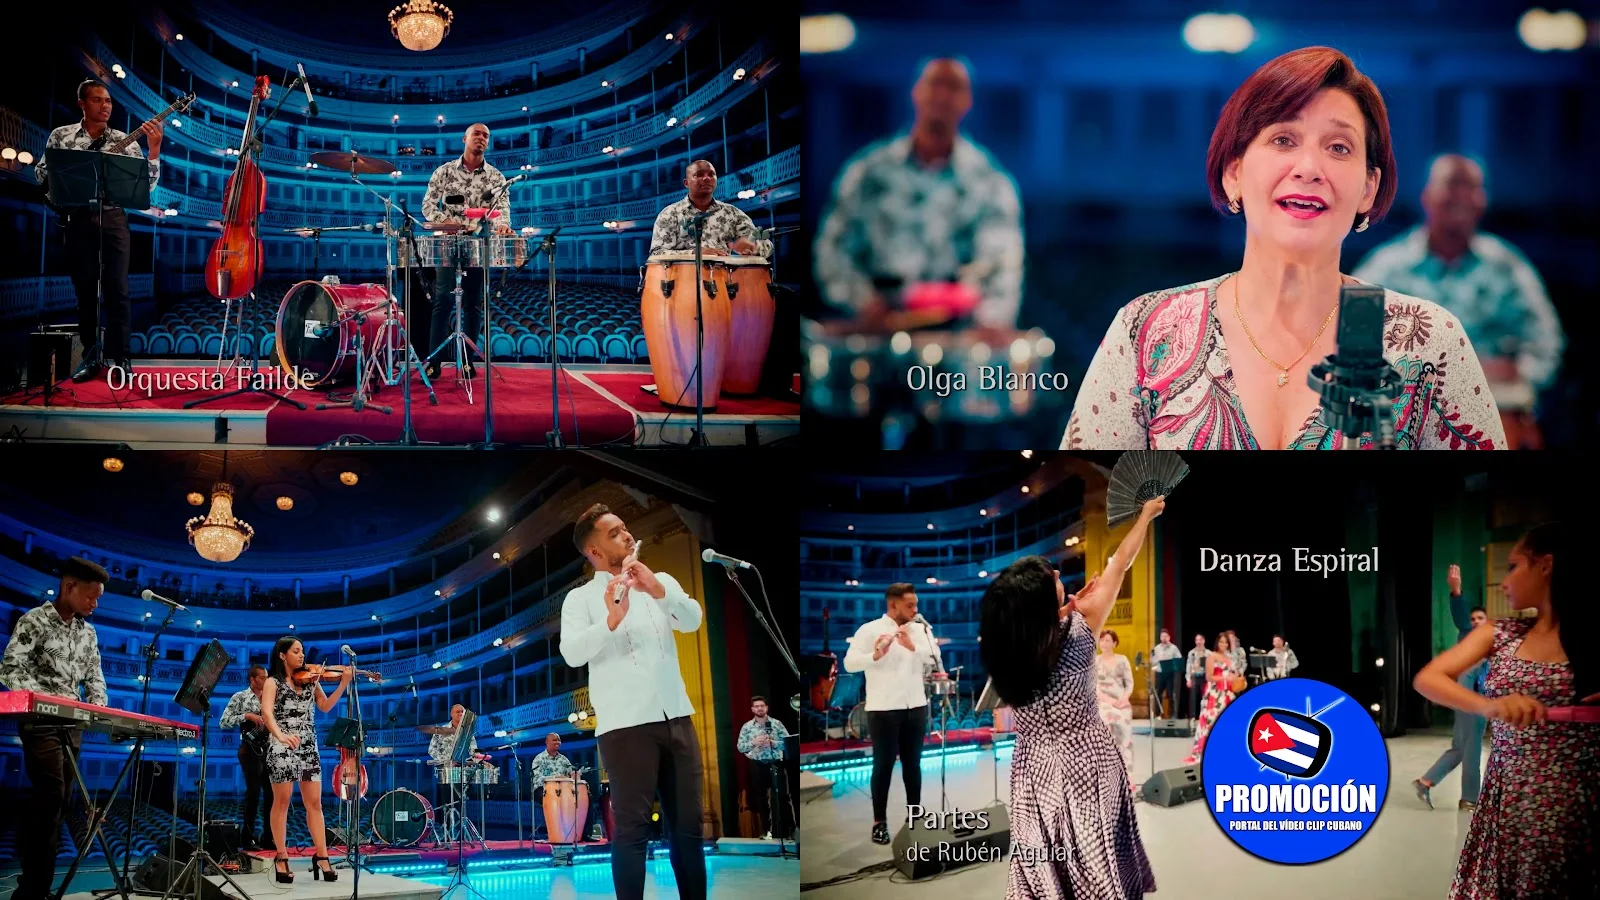 Orquesta Failde y Olga Blanco - ¨Partes¨ - Invitados: Danza Espiral - Videoclip. Portal Del Vídeo Clip Cubano. Música tradicional cubana. Danzón. Cuba